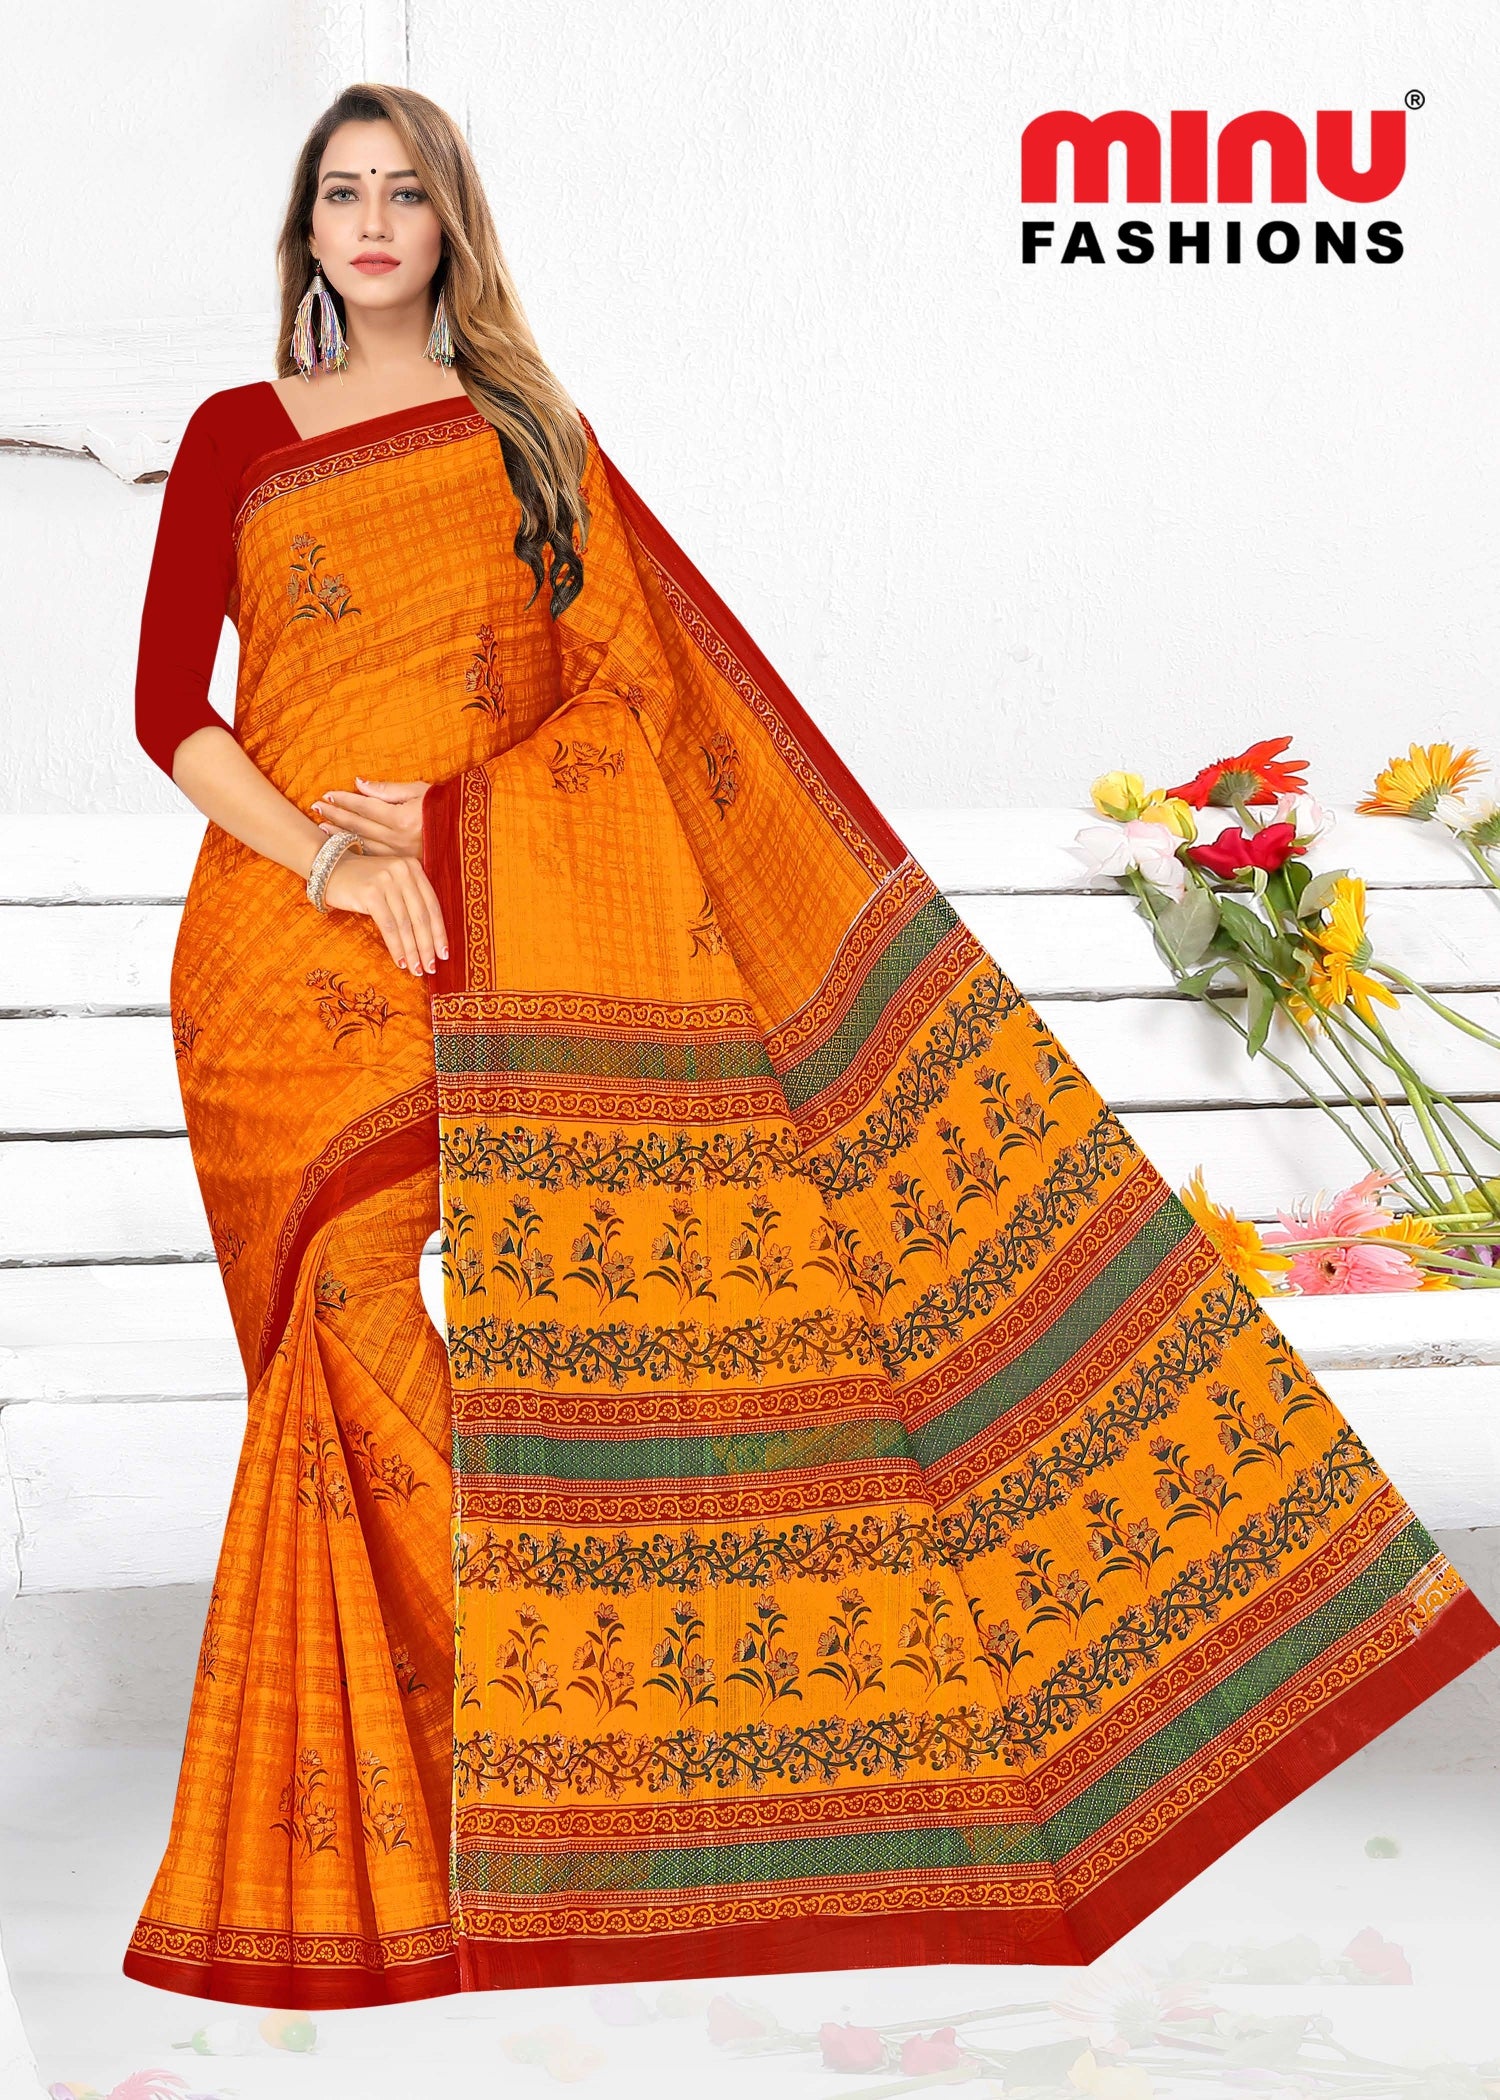 printed cotton saree at saree manufacturer in India